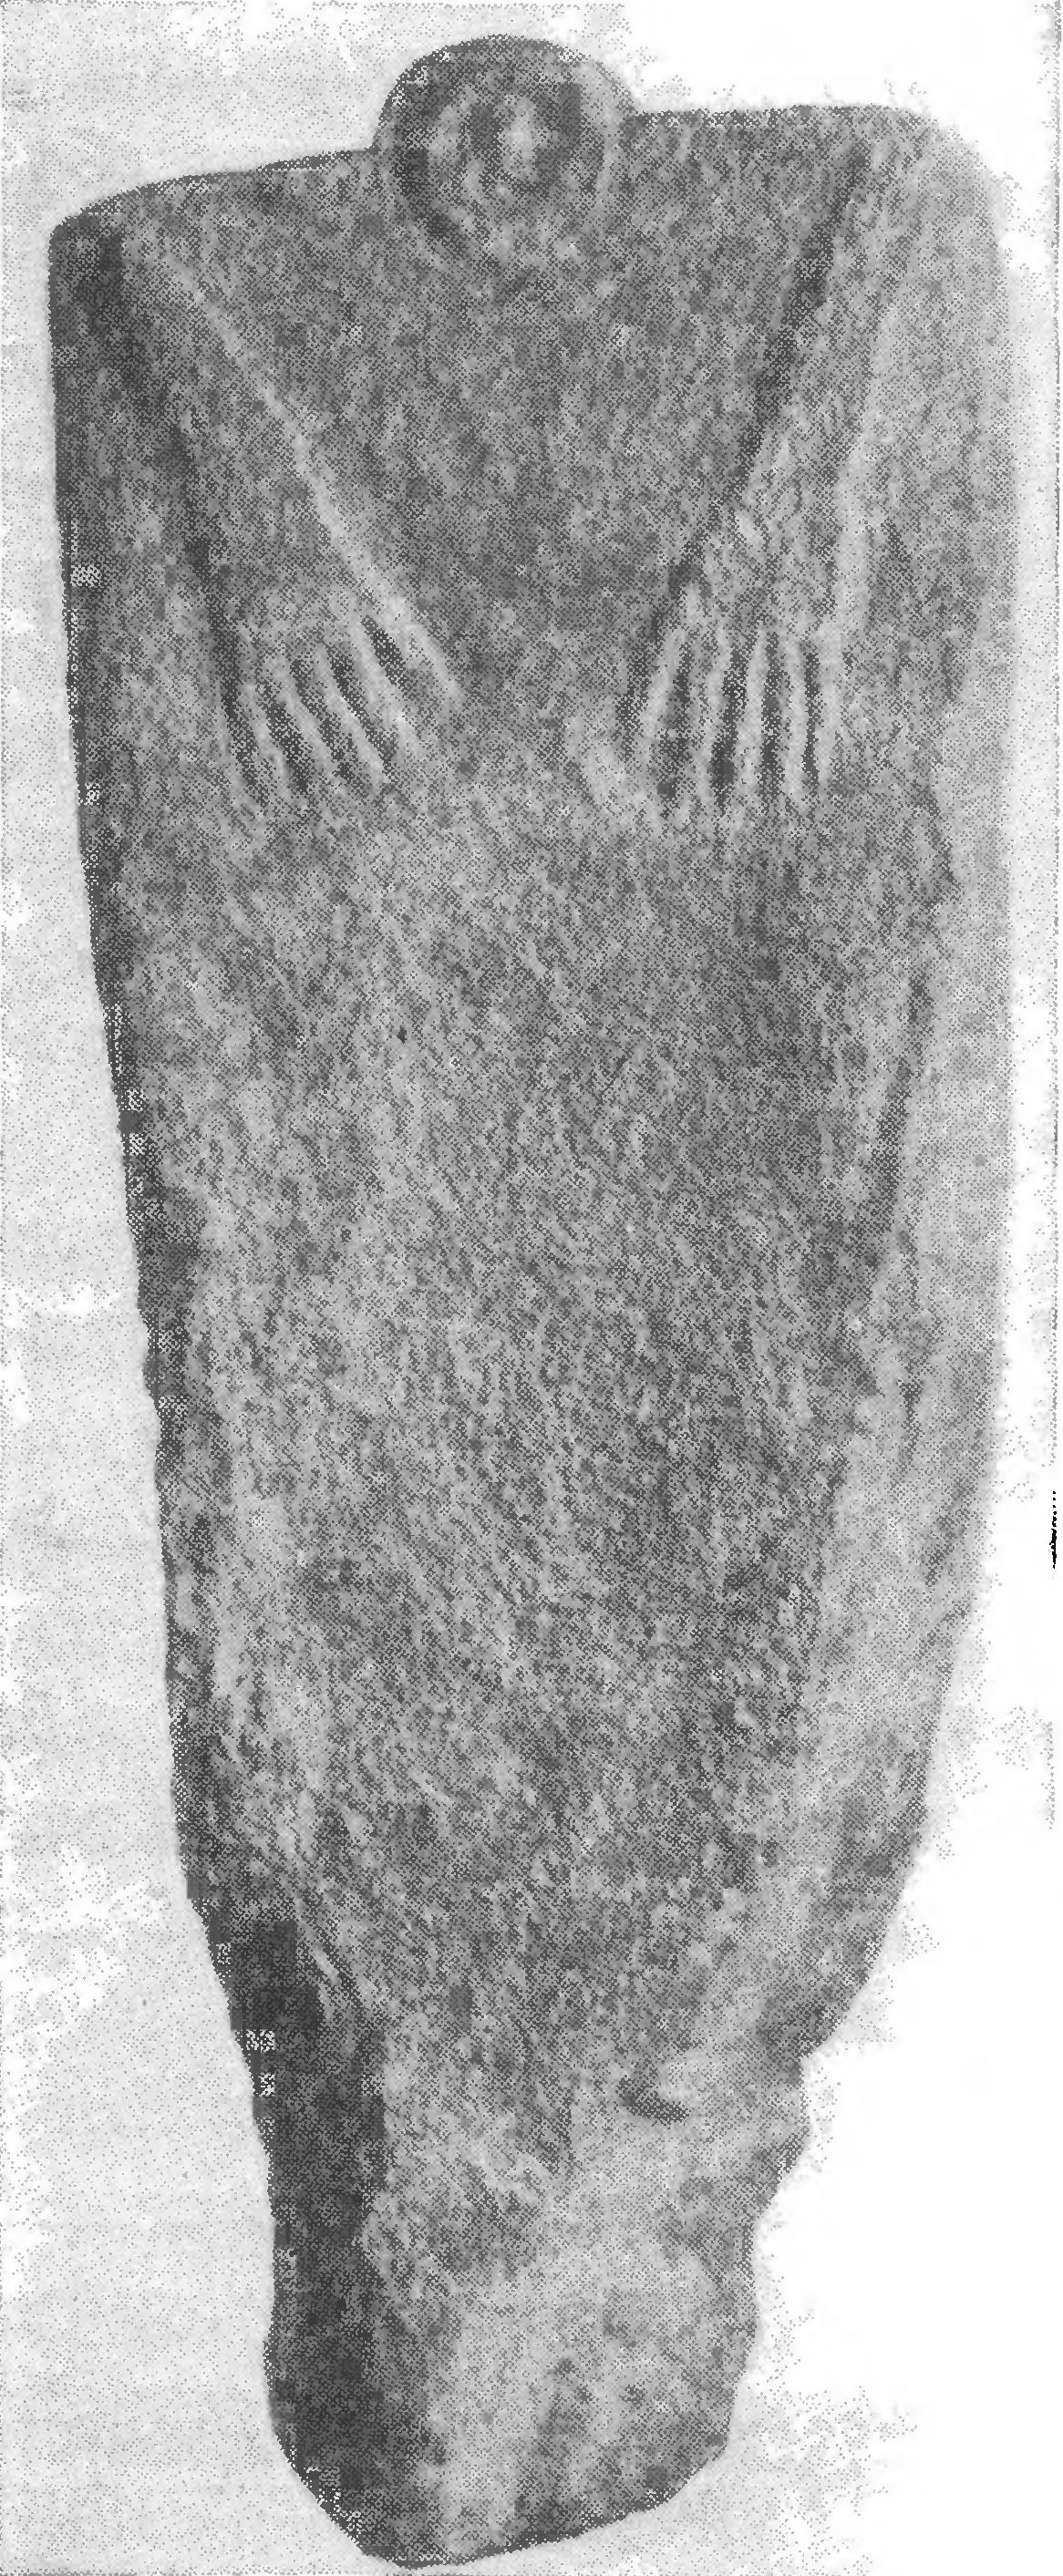 96, Примитивная скульптура, найденная в Дии-Тиритаке